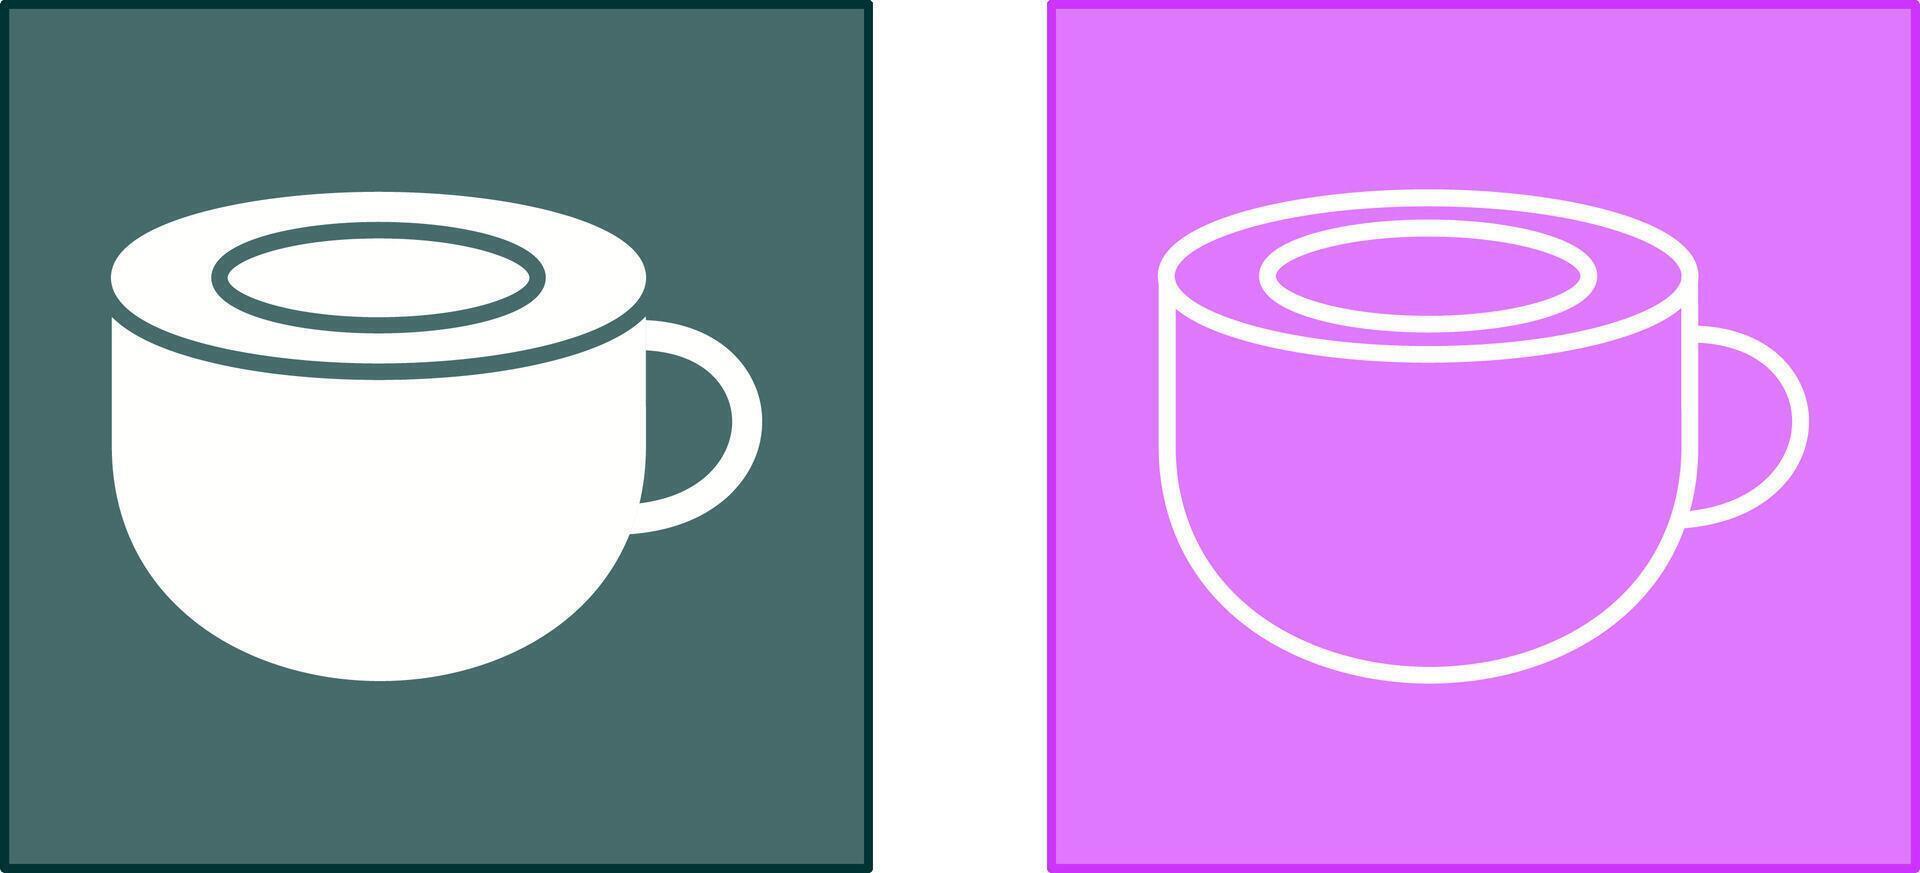 icona della tazza di caffè vettore